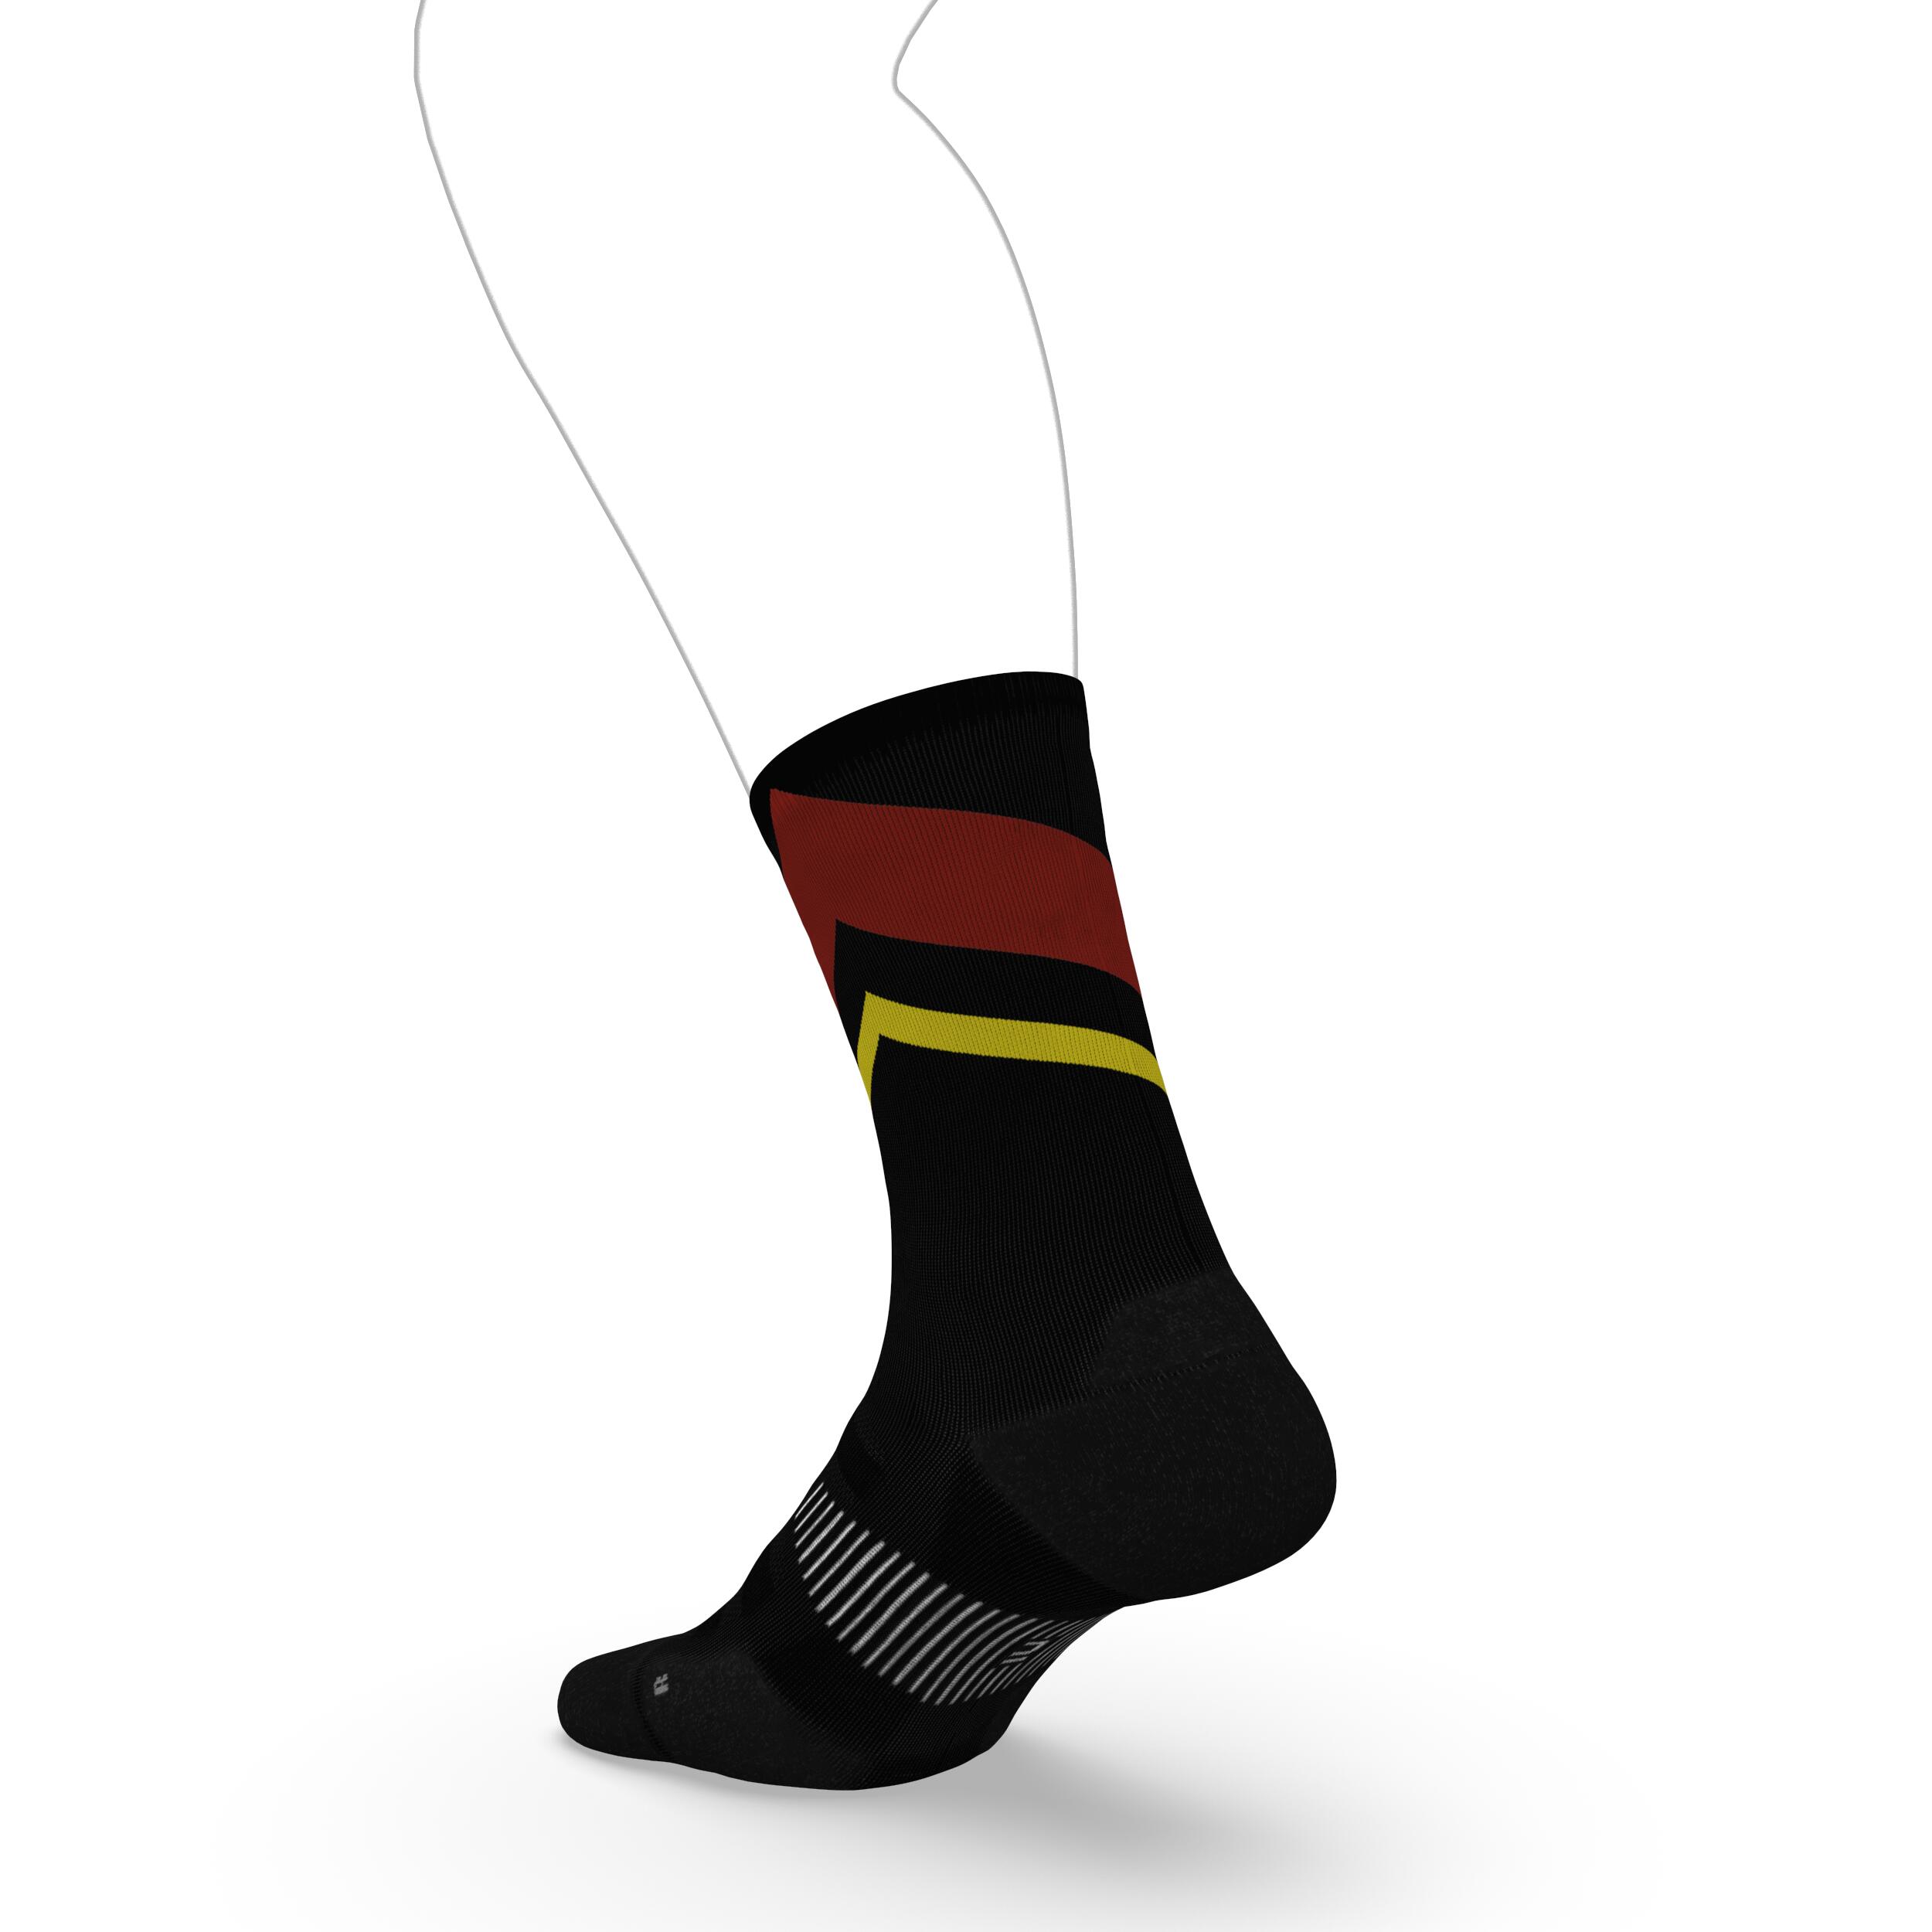 Run900 Mid-Calf Thick Running Socks - Black/Red/Yellow 3/6